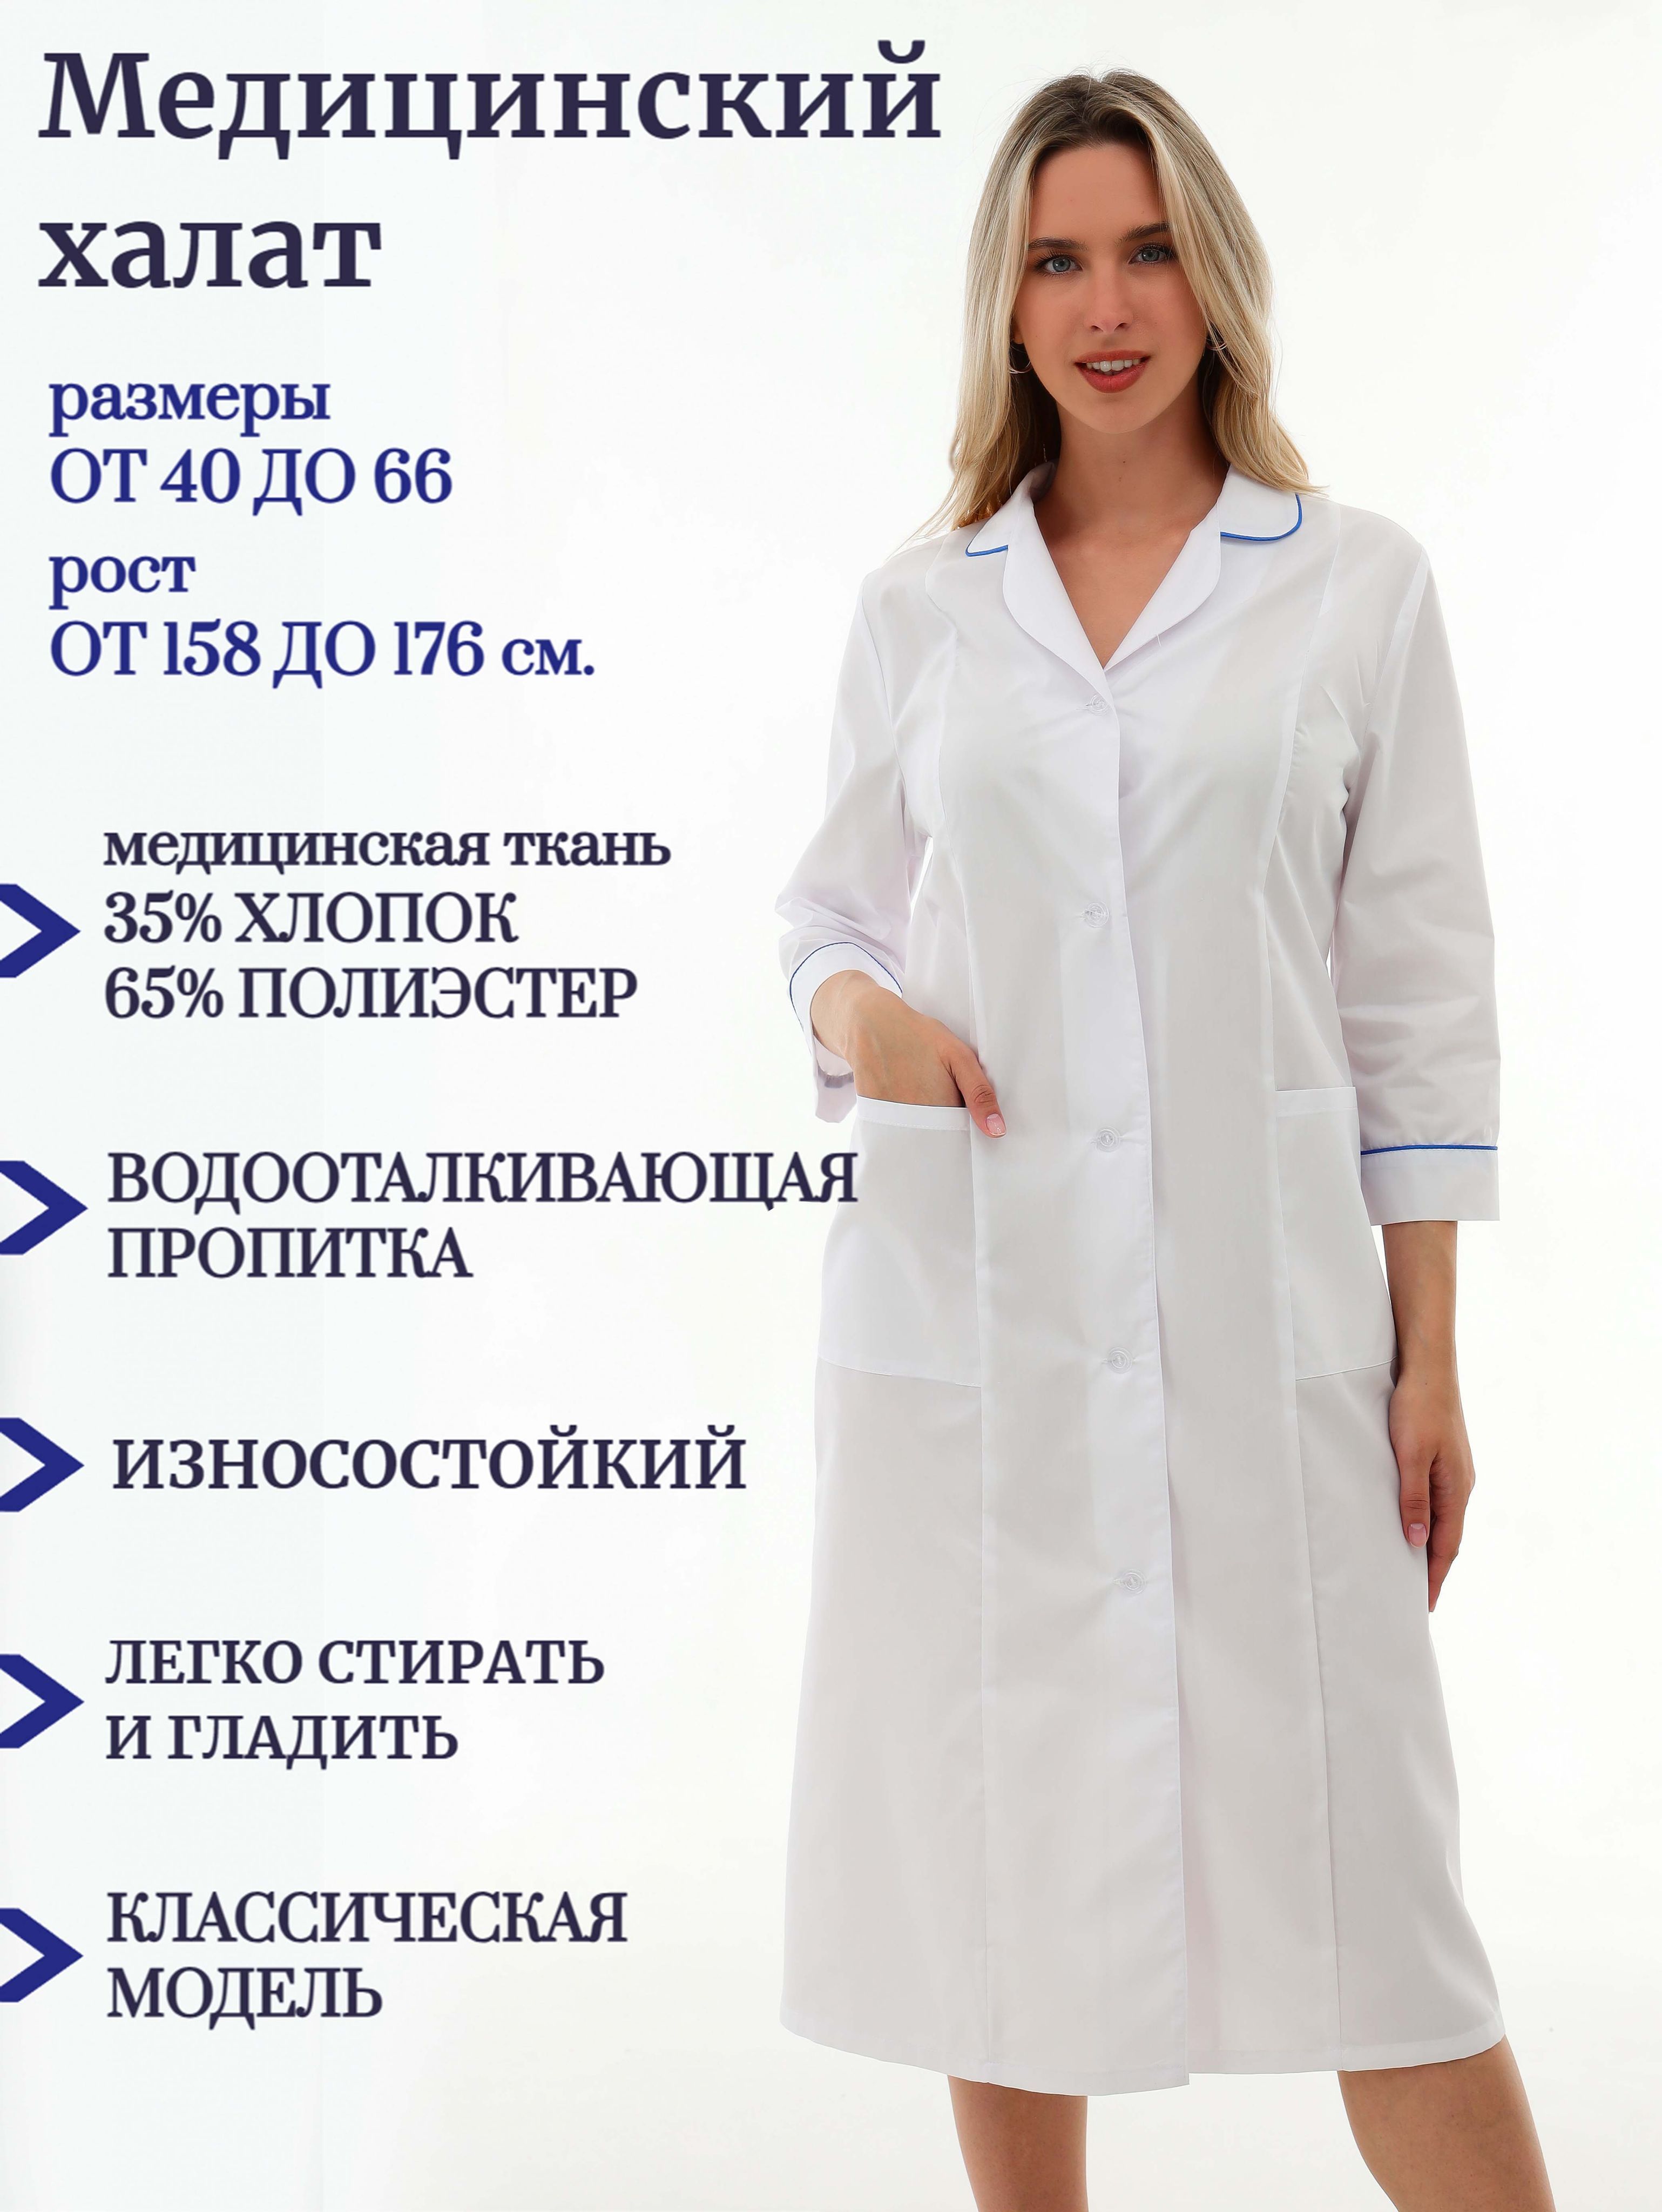 Модный медицинский халат с вышивкой Панацея - Интернет-магазин ТМ Грация